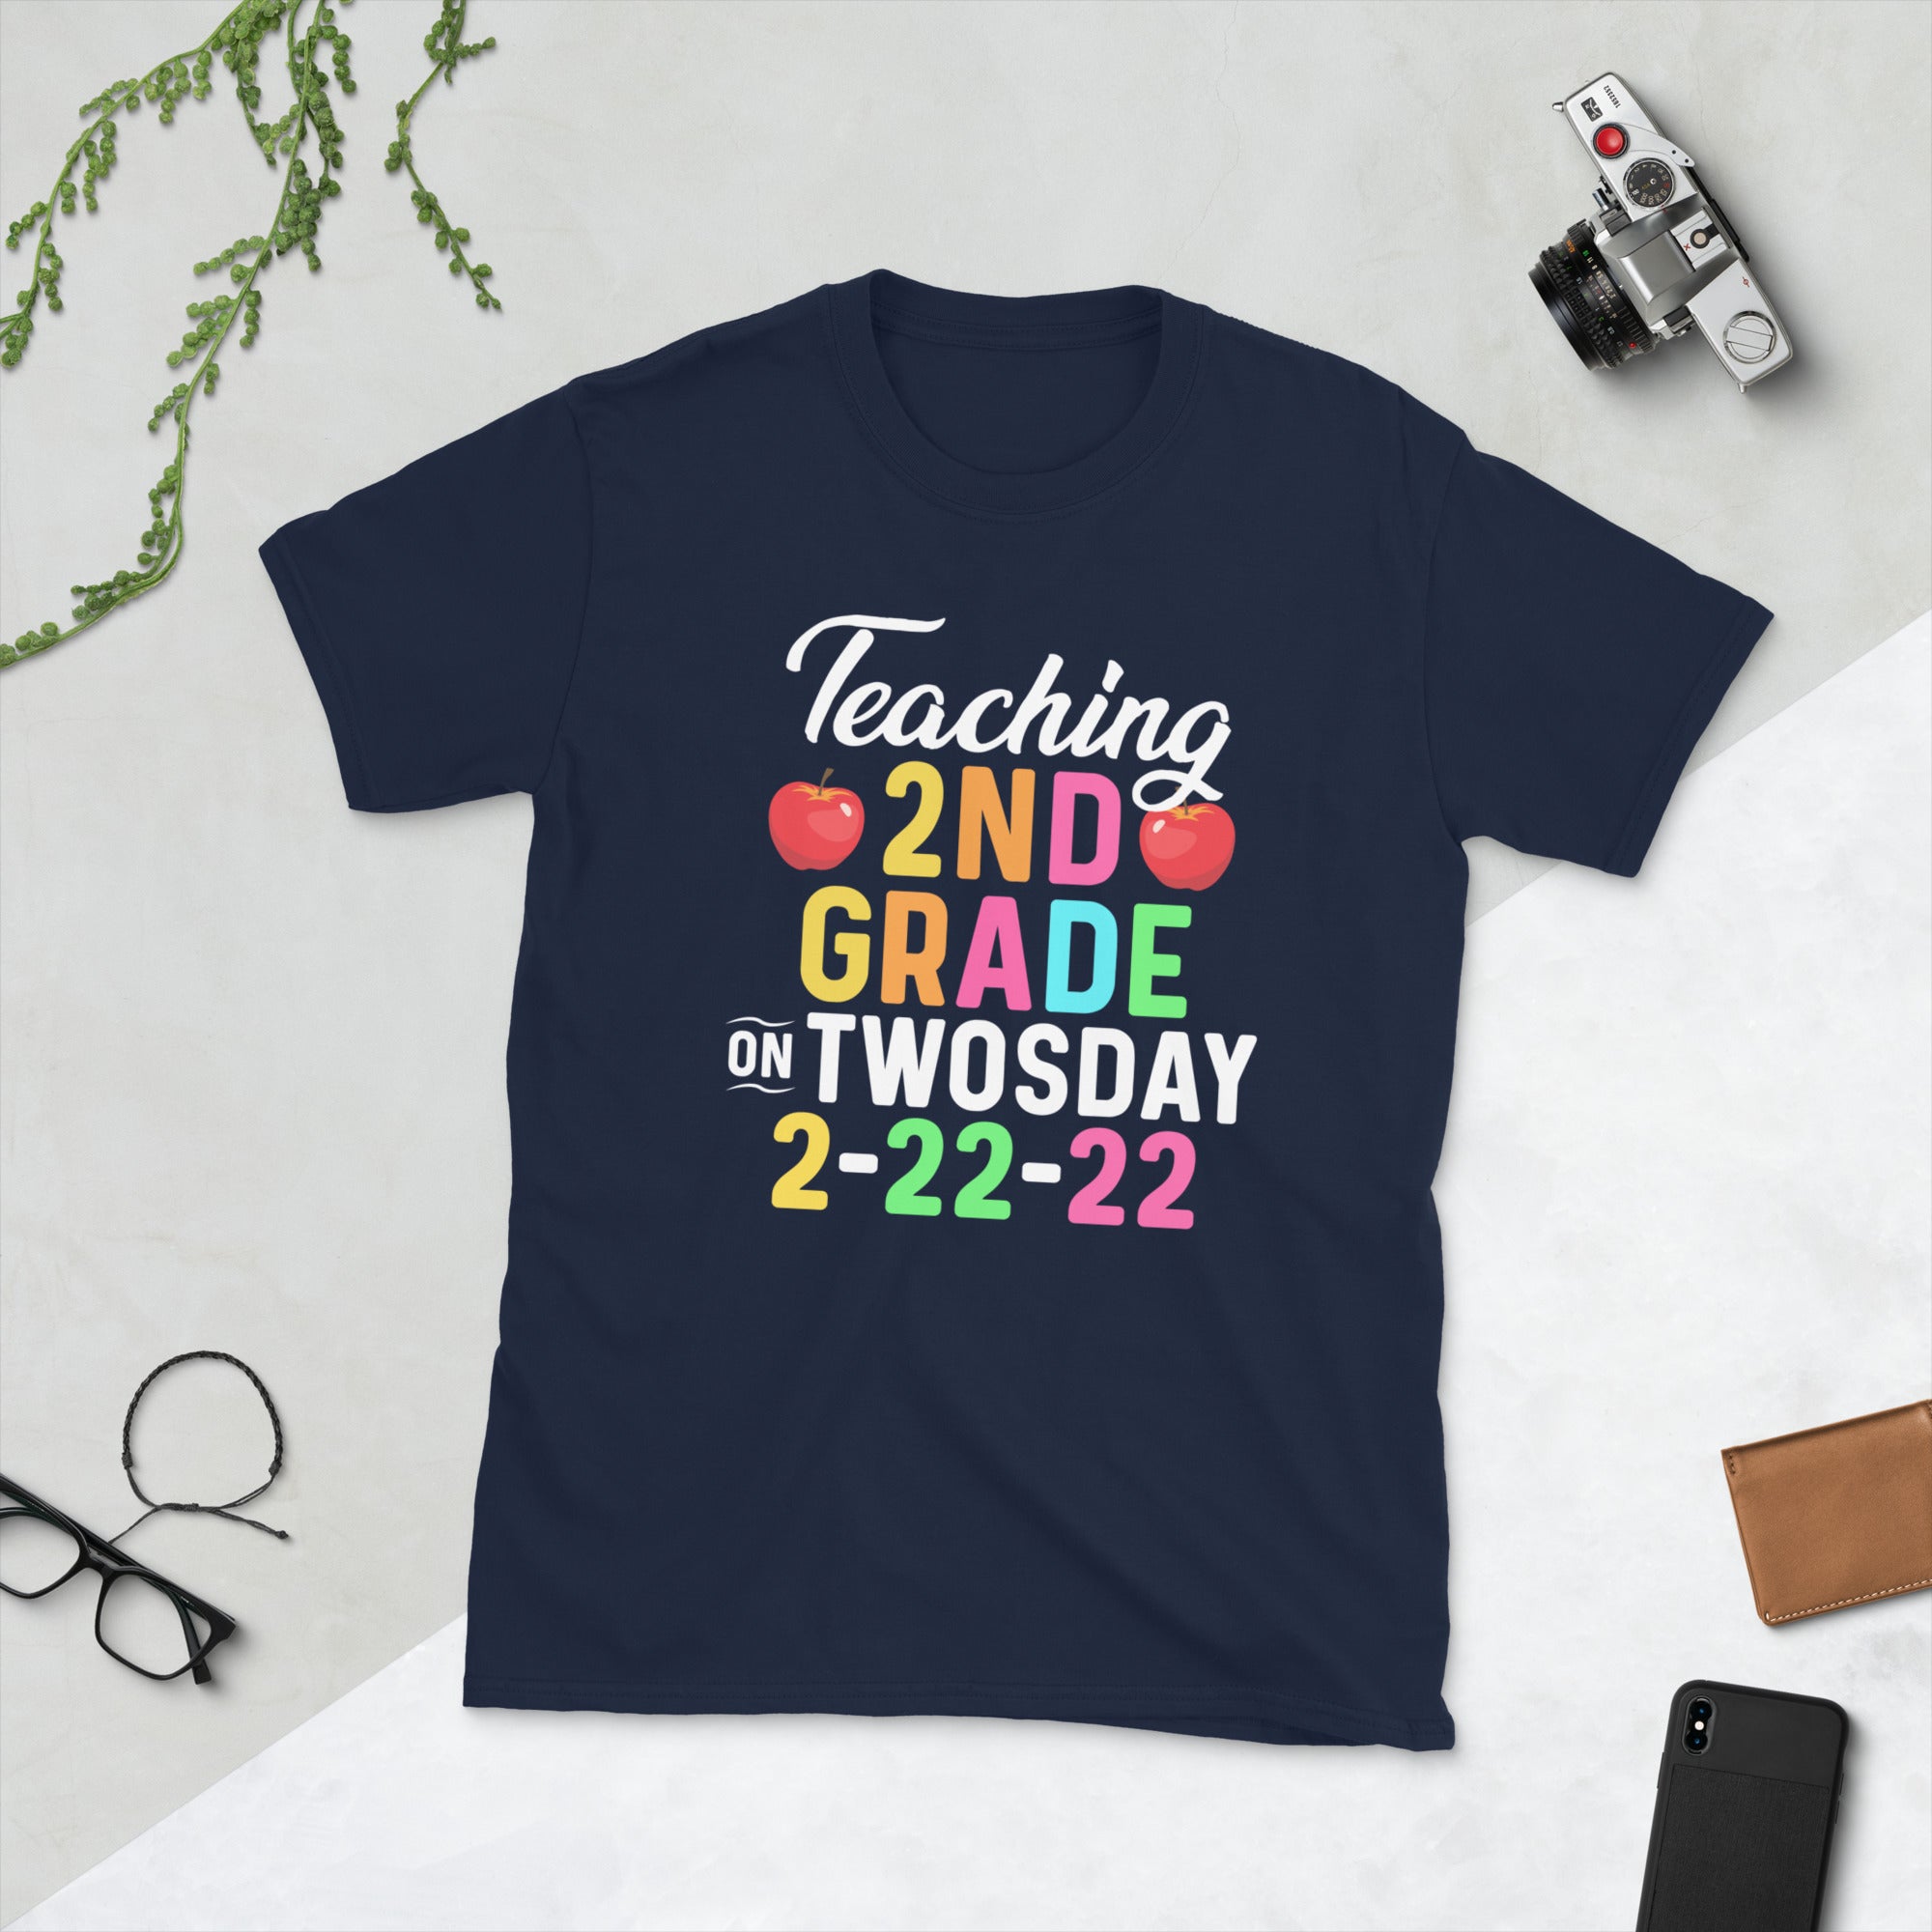 Enseñanza de 2do grado los dos días, camisa de dos días, camiseta de maestro de 2do grado, martes 2-22-22, camiseta divertida de dos días, maestro de matemáticas, regalos de numerología